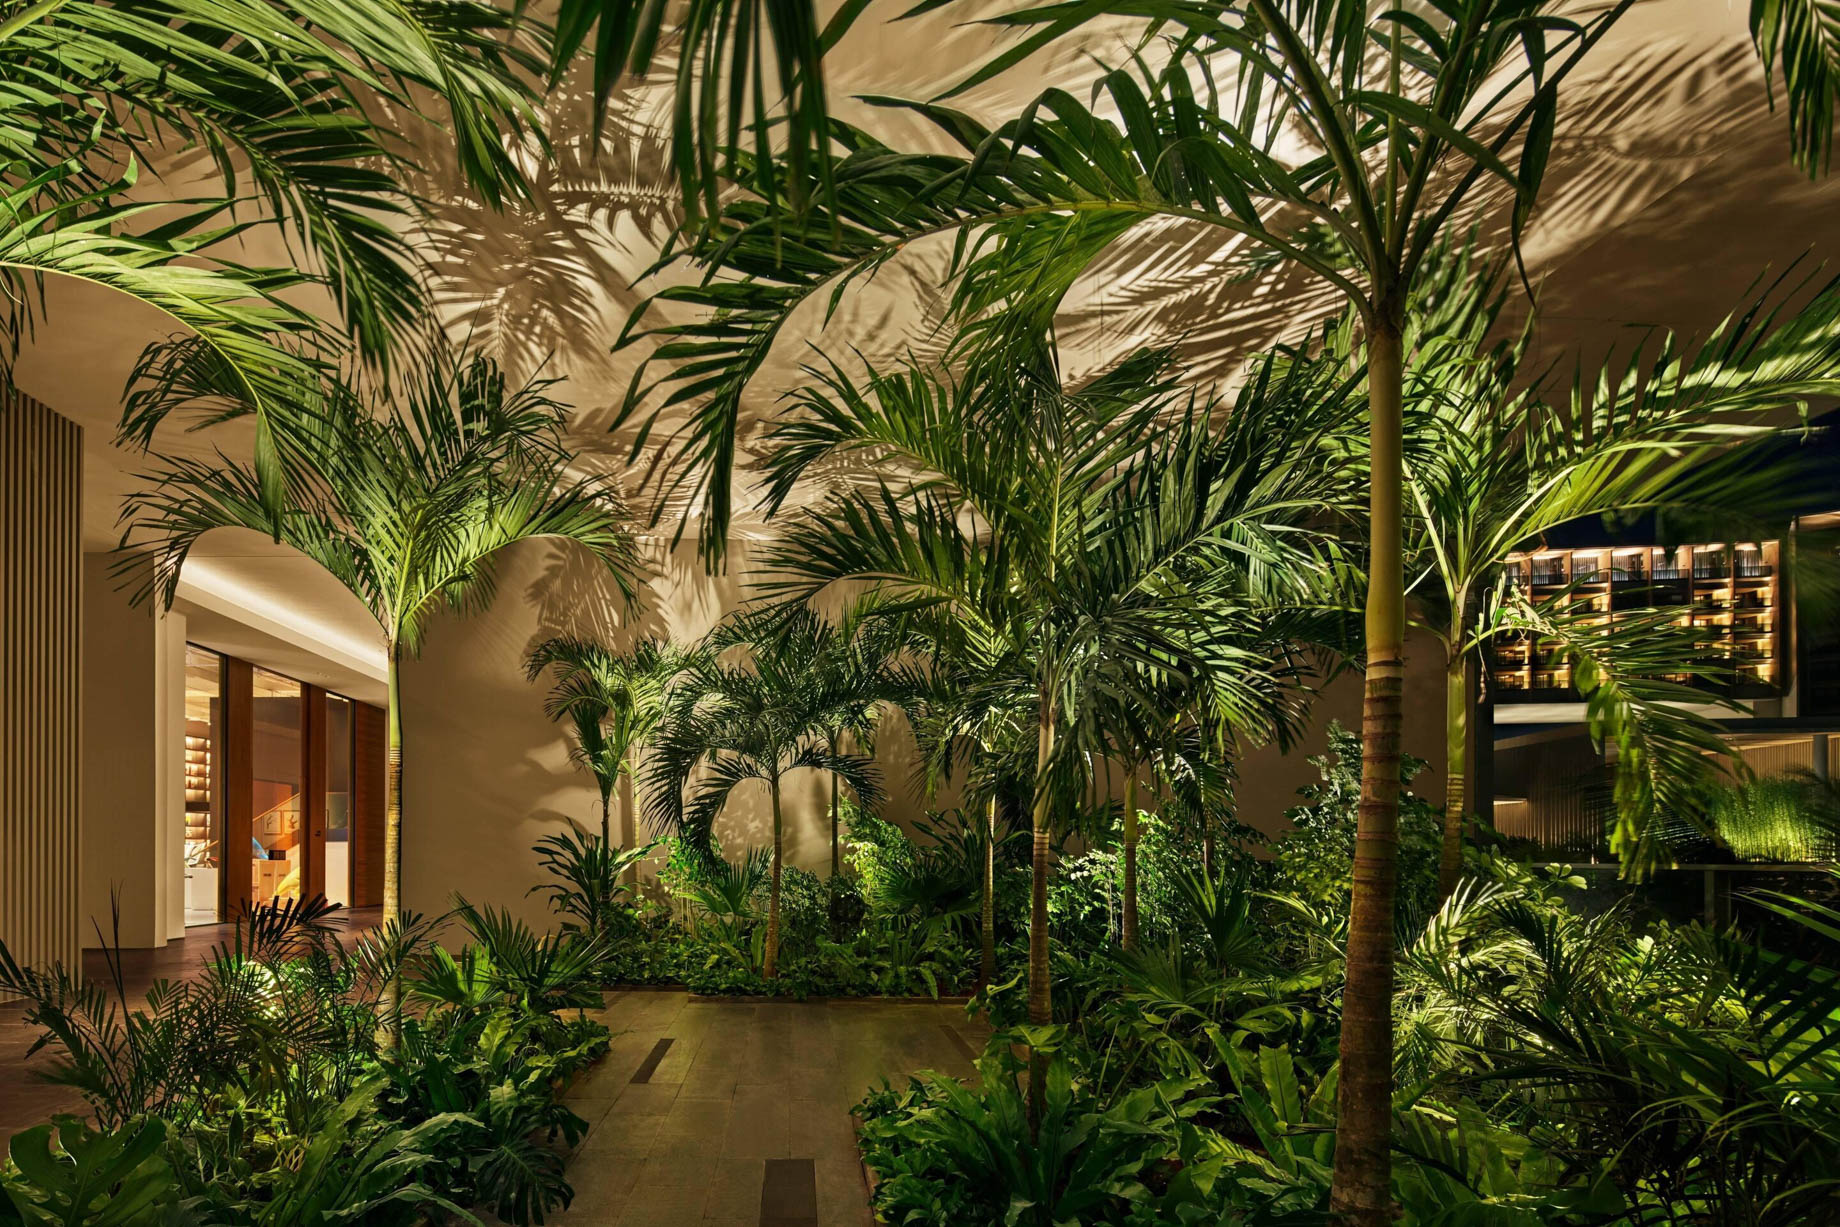 The Sanya EDITION Hotel – Sanya, Hainan, China – Lobby Pathway